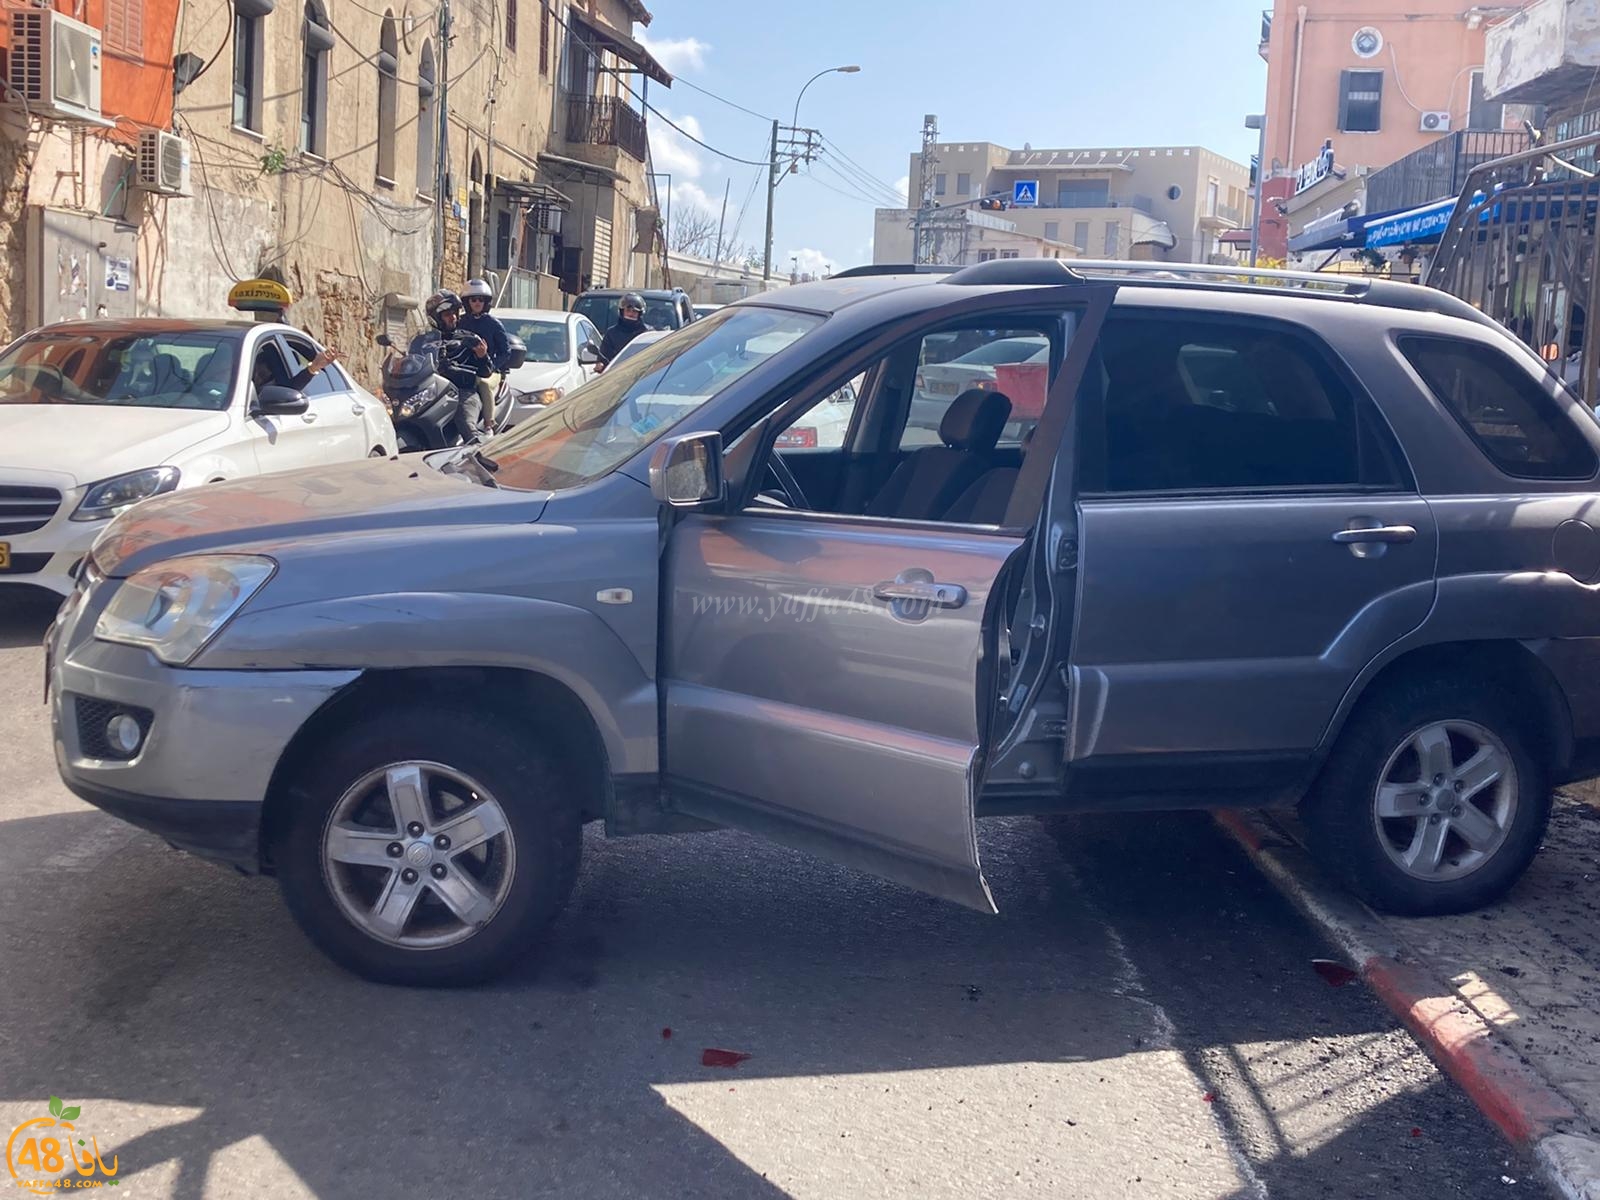   يافا: اصابة متوسطة لسيدة بحادث طرق بين مركبتين 